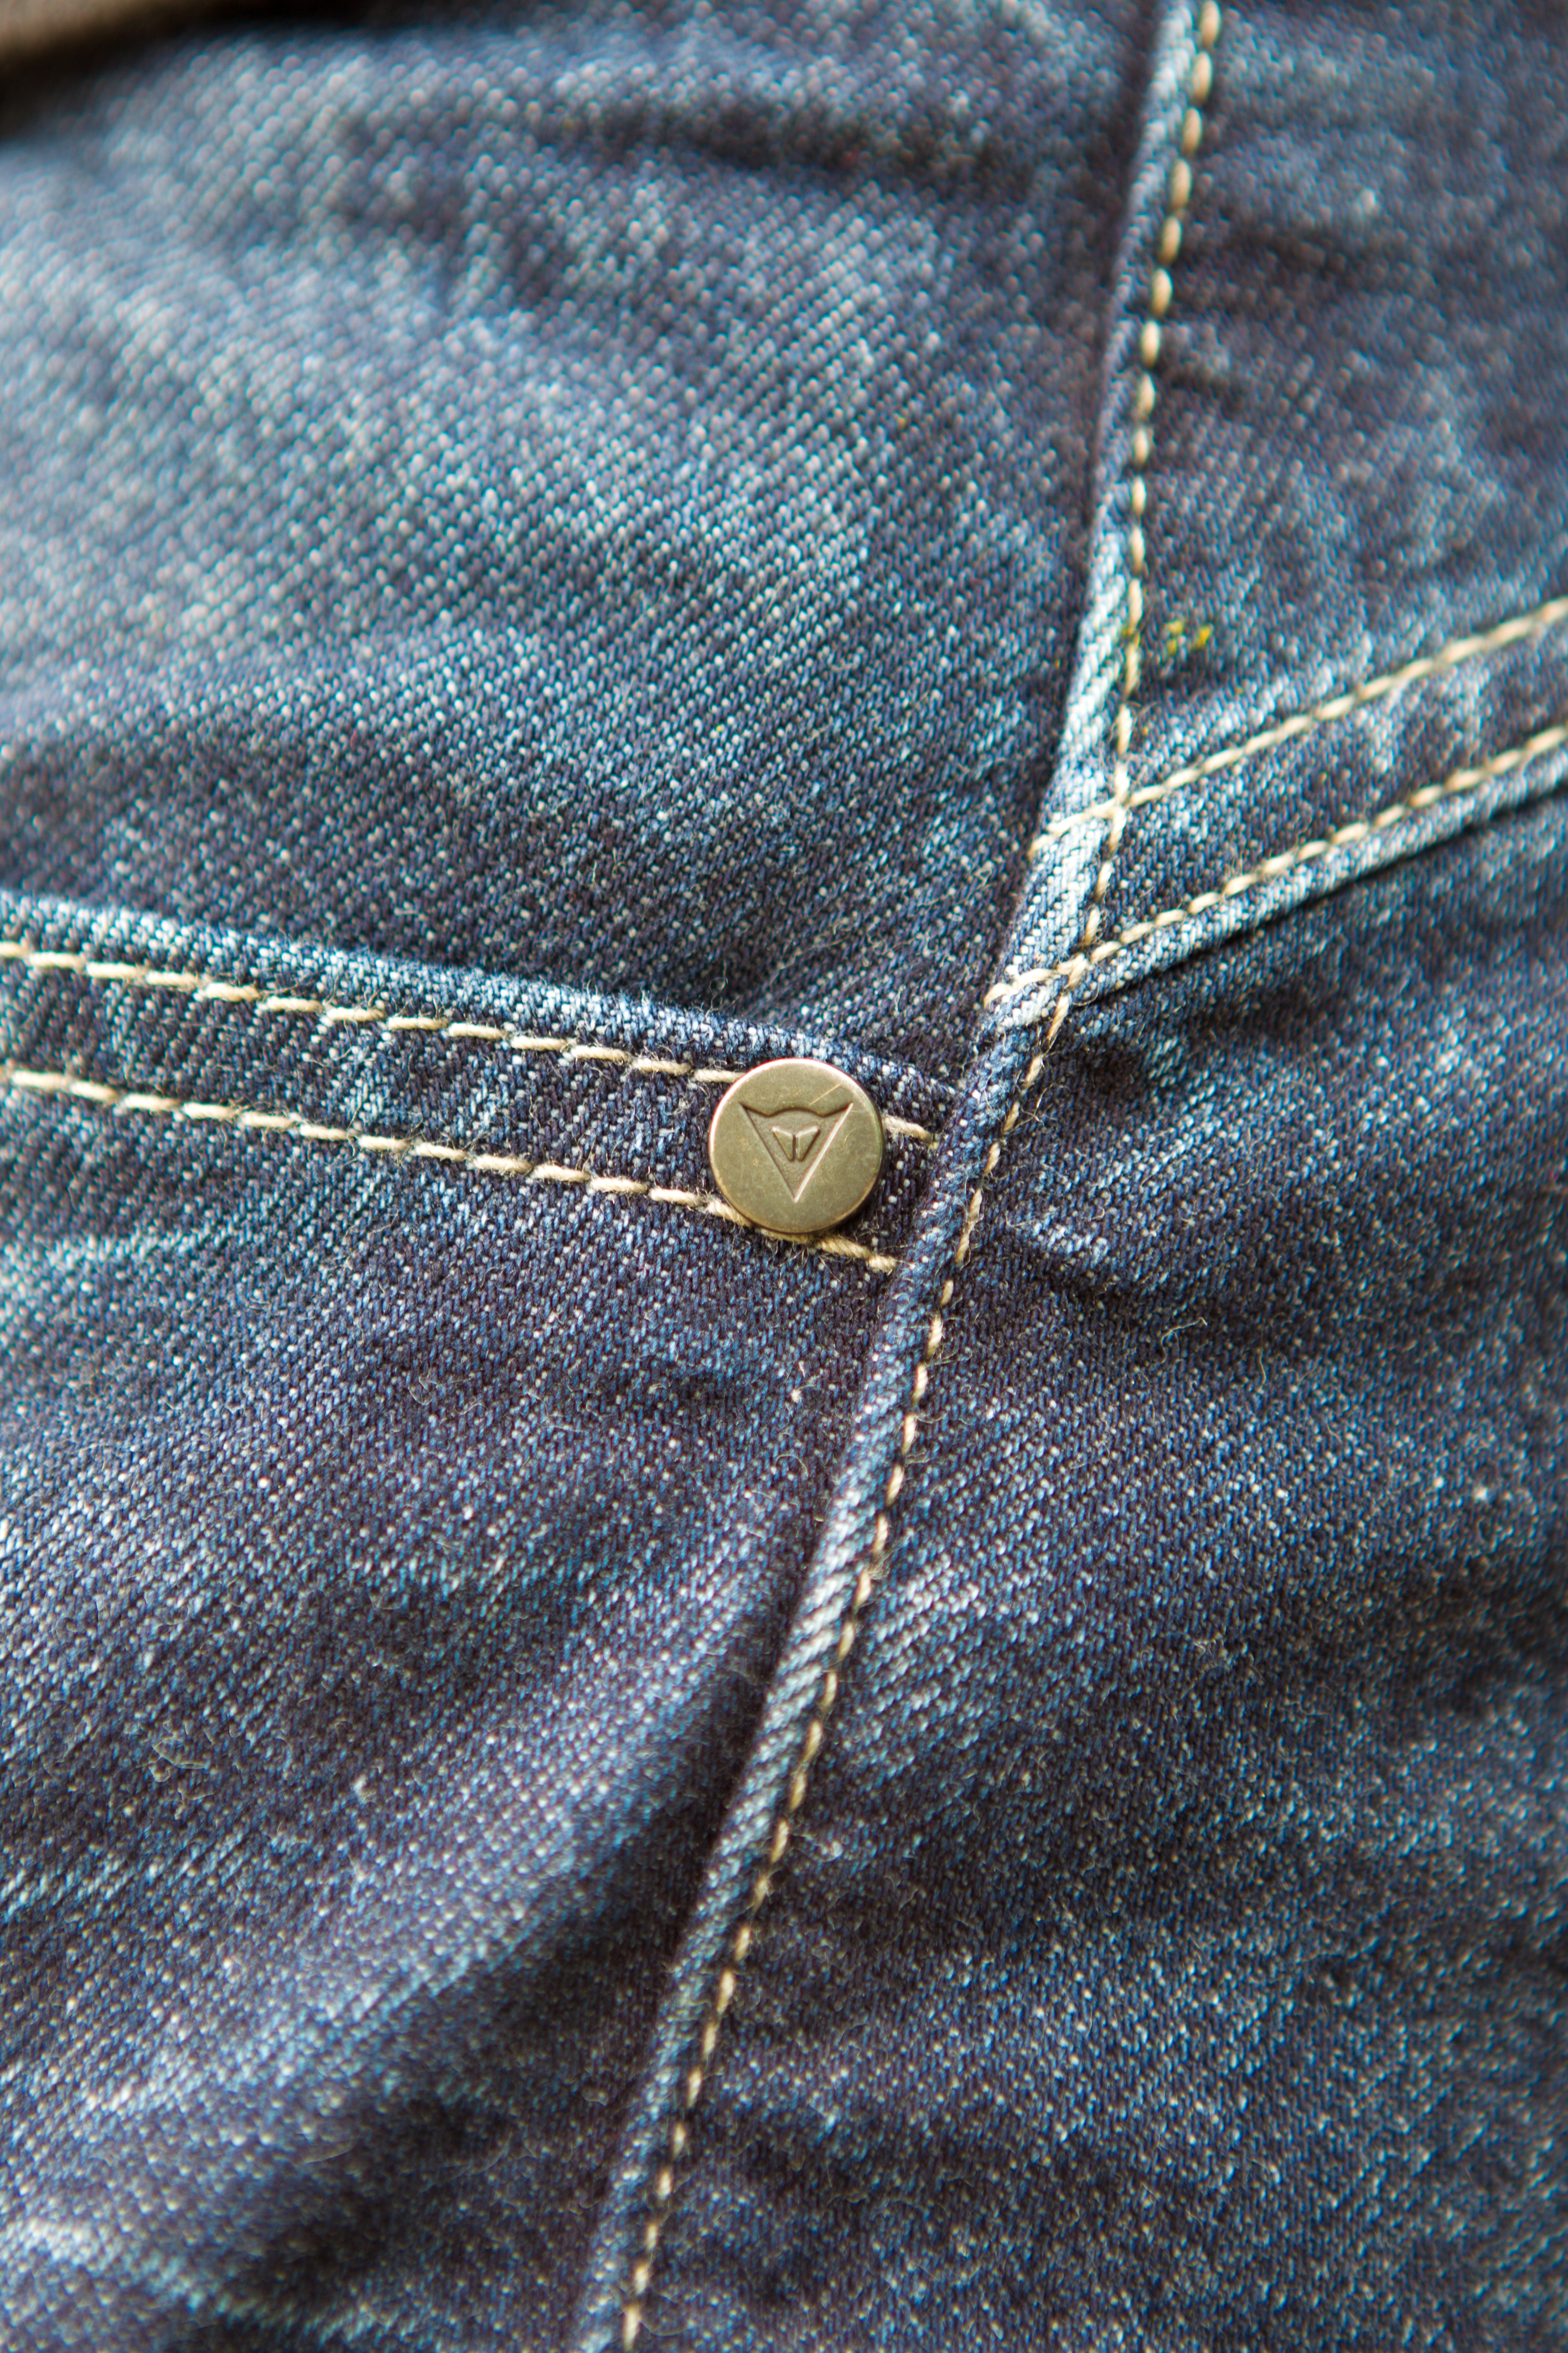 Dainese Bonneville jeans details